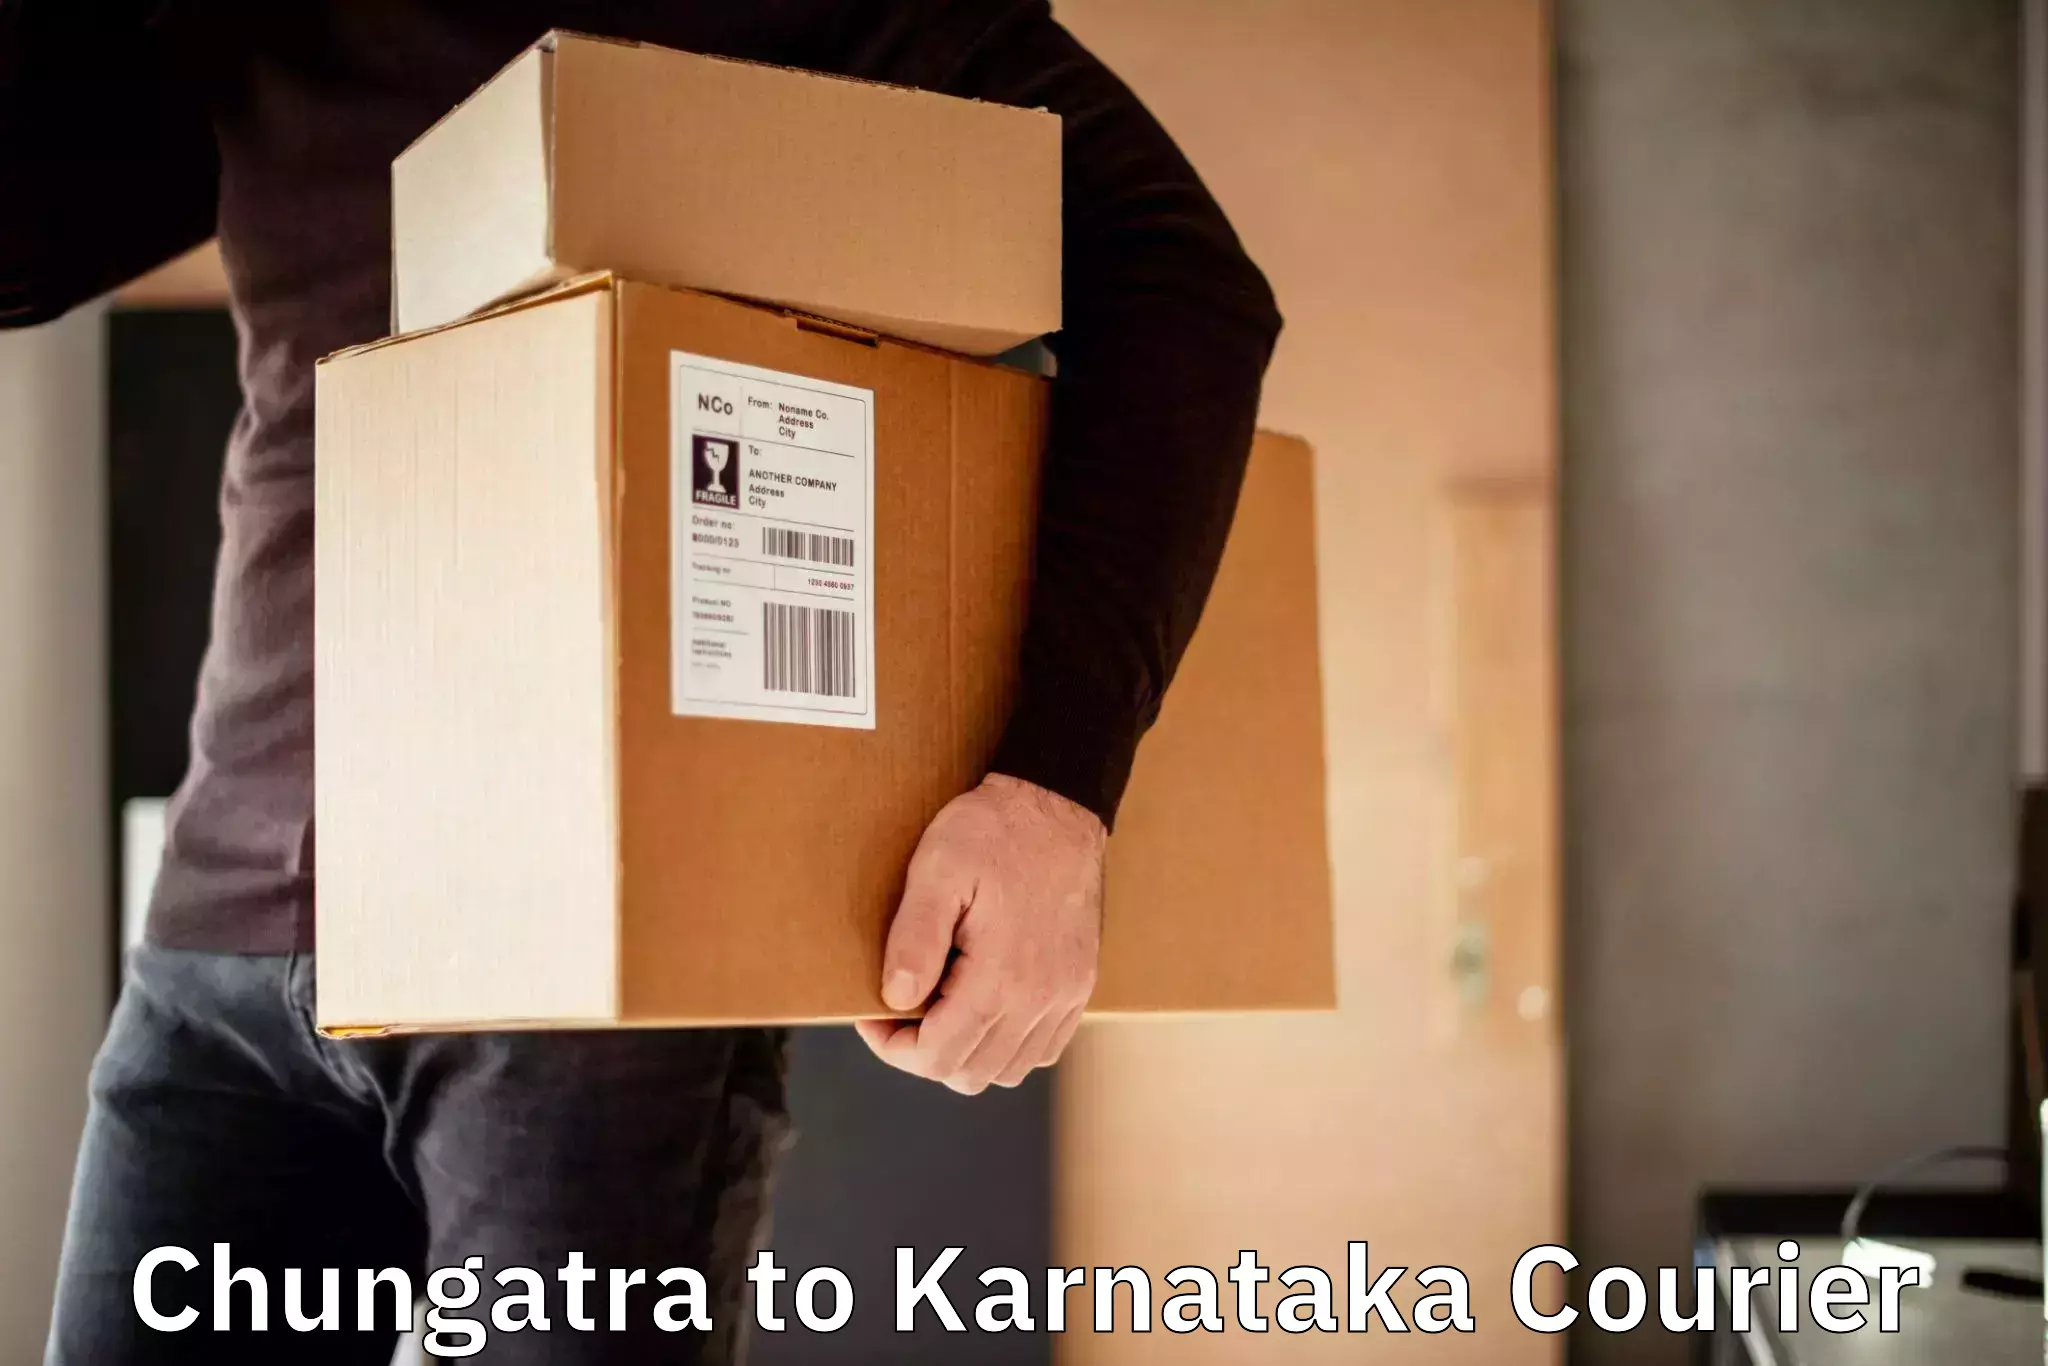 High-capacity courier solutions Chungatra to Hosadurga